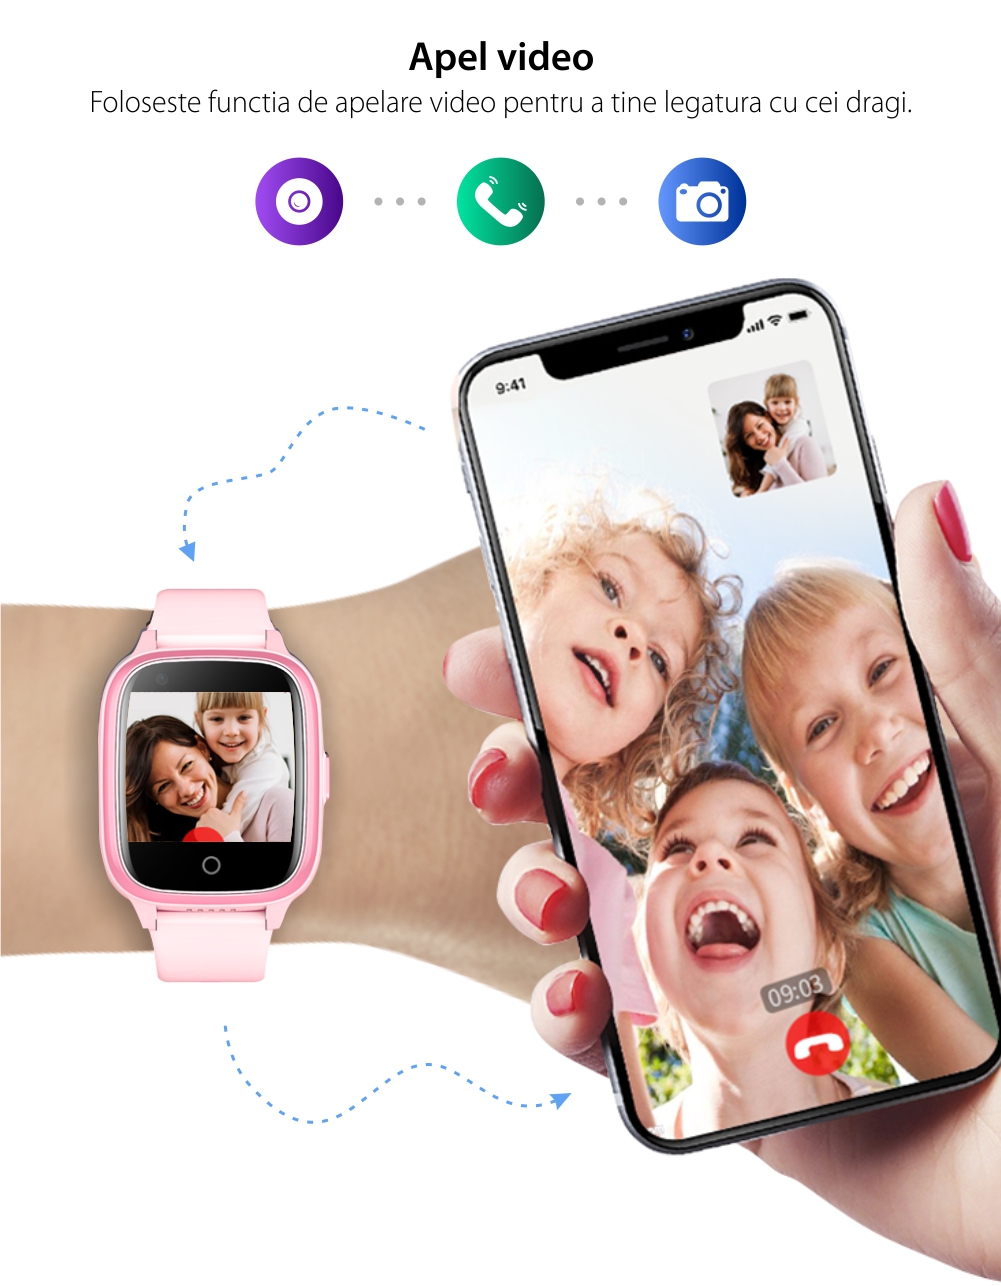 Ceas Smartwatch Pentru Copii Wonlex KT17, Roz cu Functie de Localizare GPS, Comunicare bidirectionala, Pedometru, Alarma, Camera, Mesagerie, Apel Video, Buton SOS